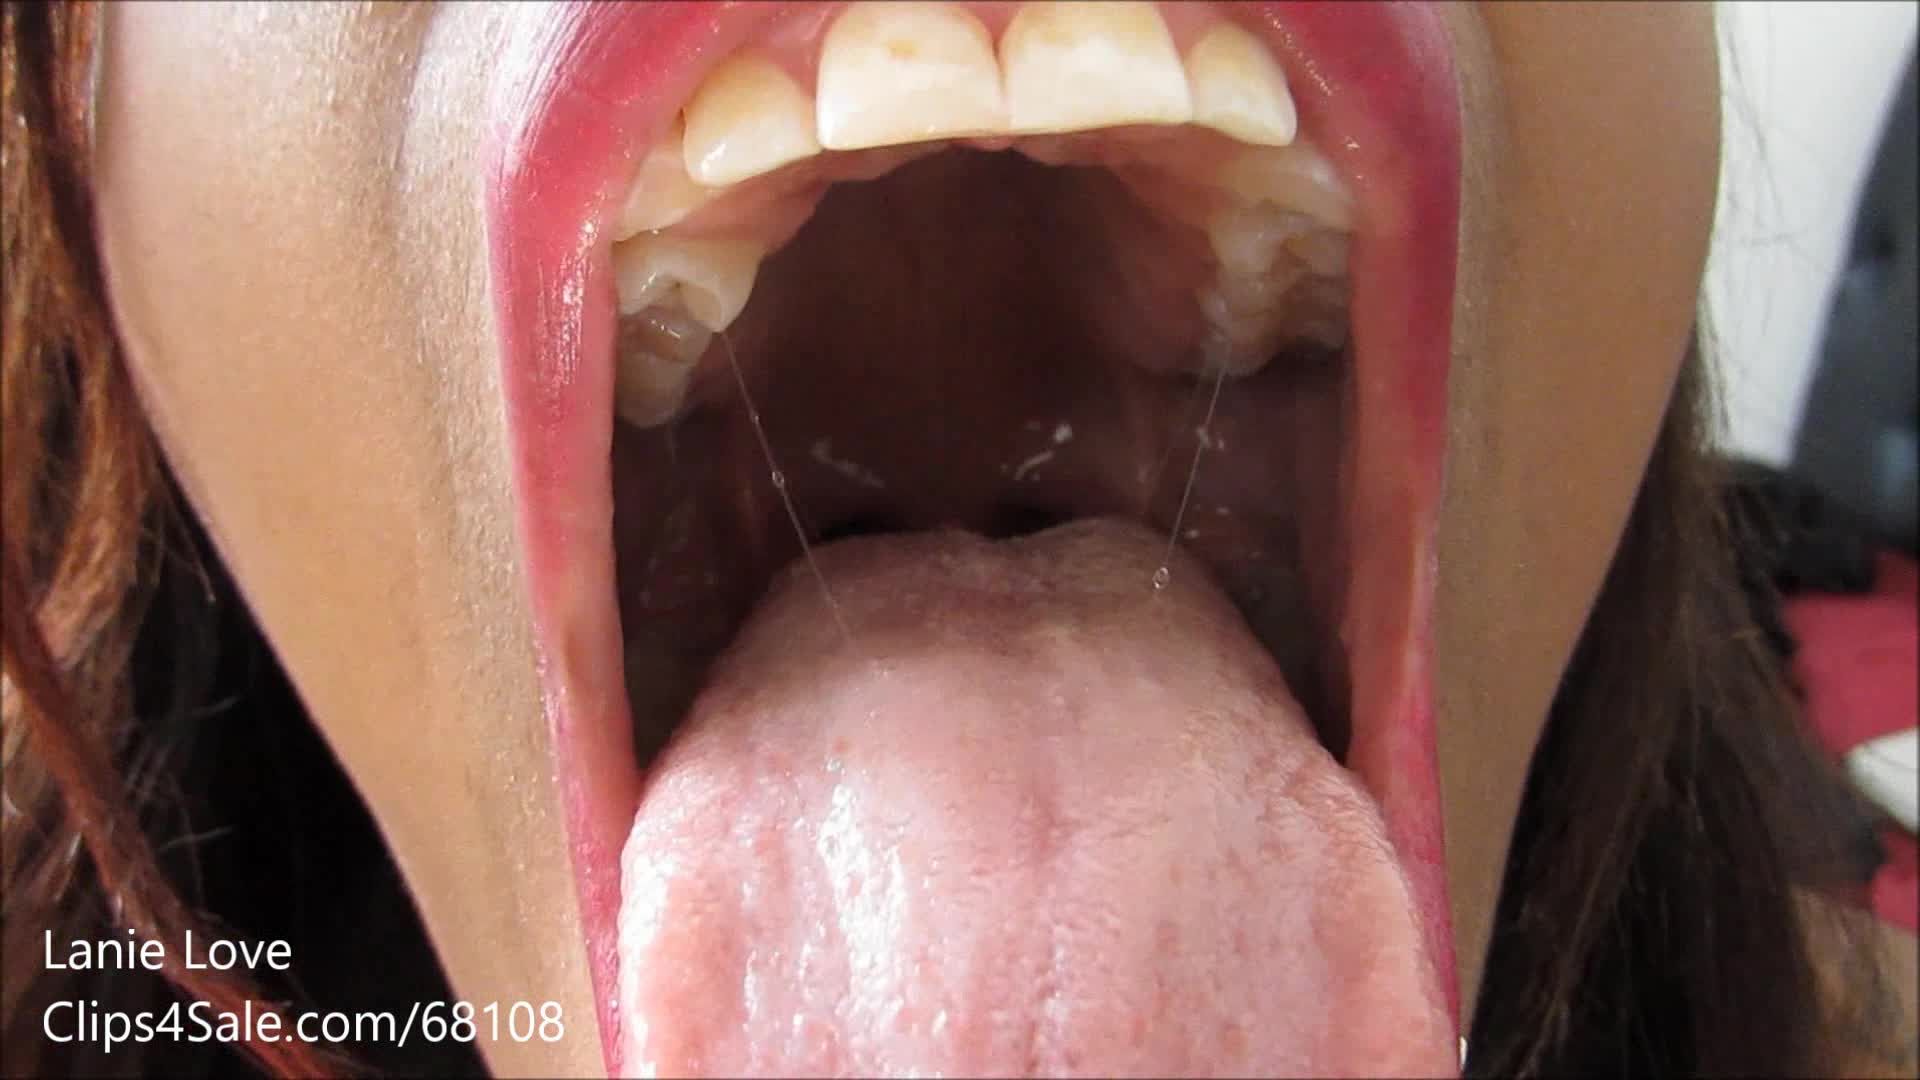 More Tongue